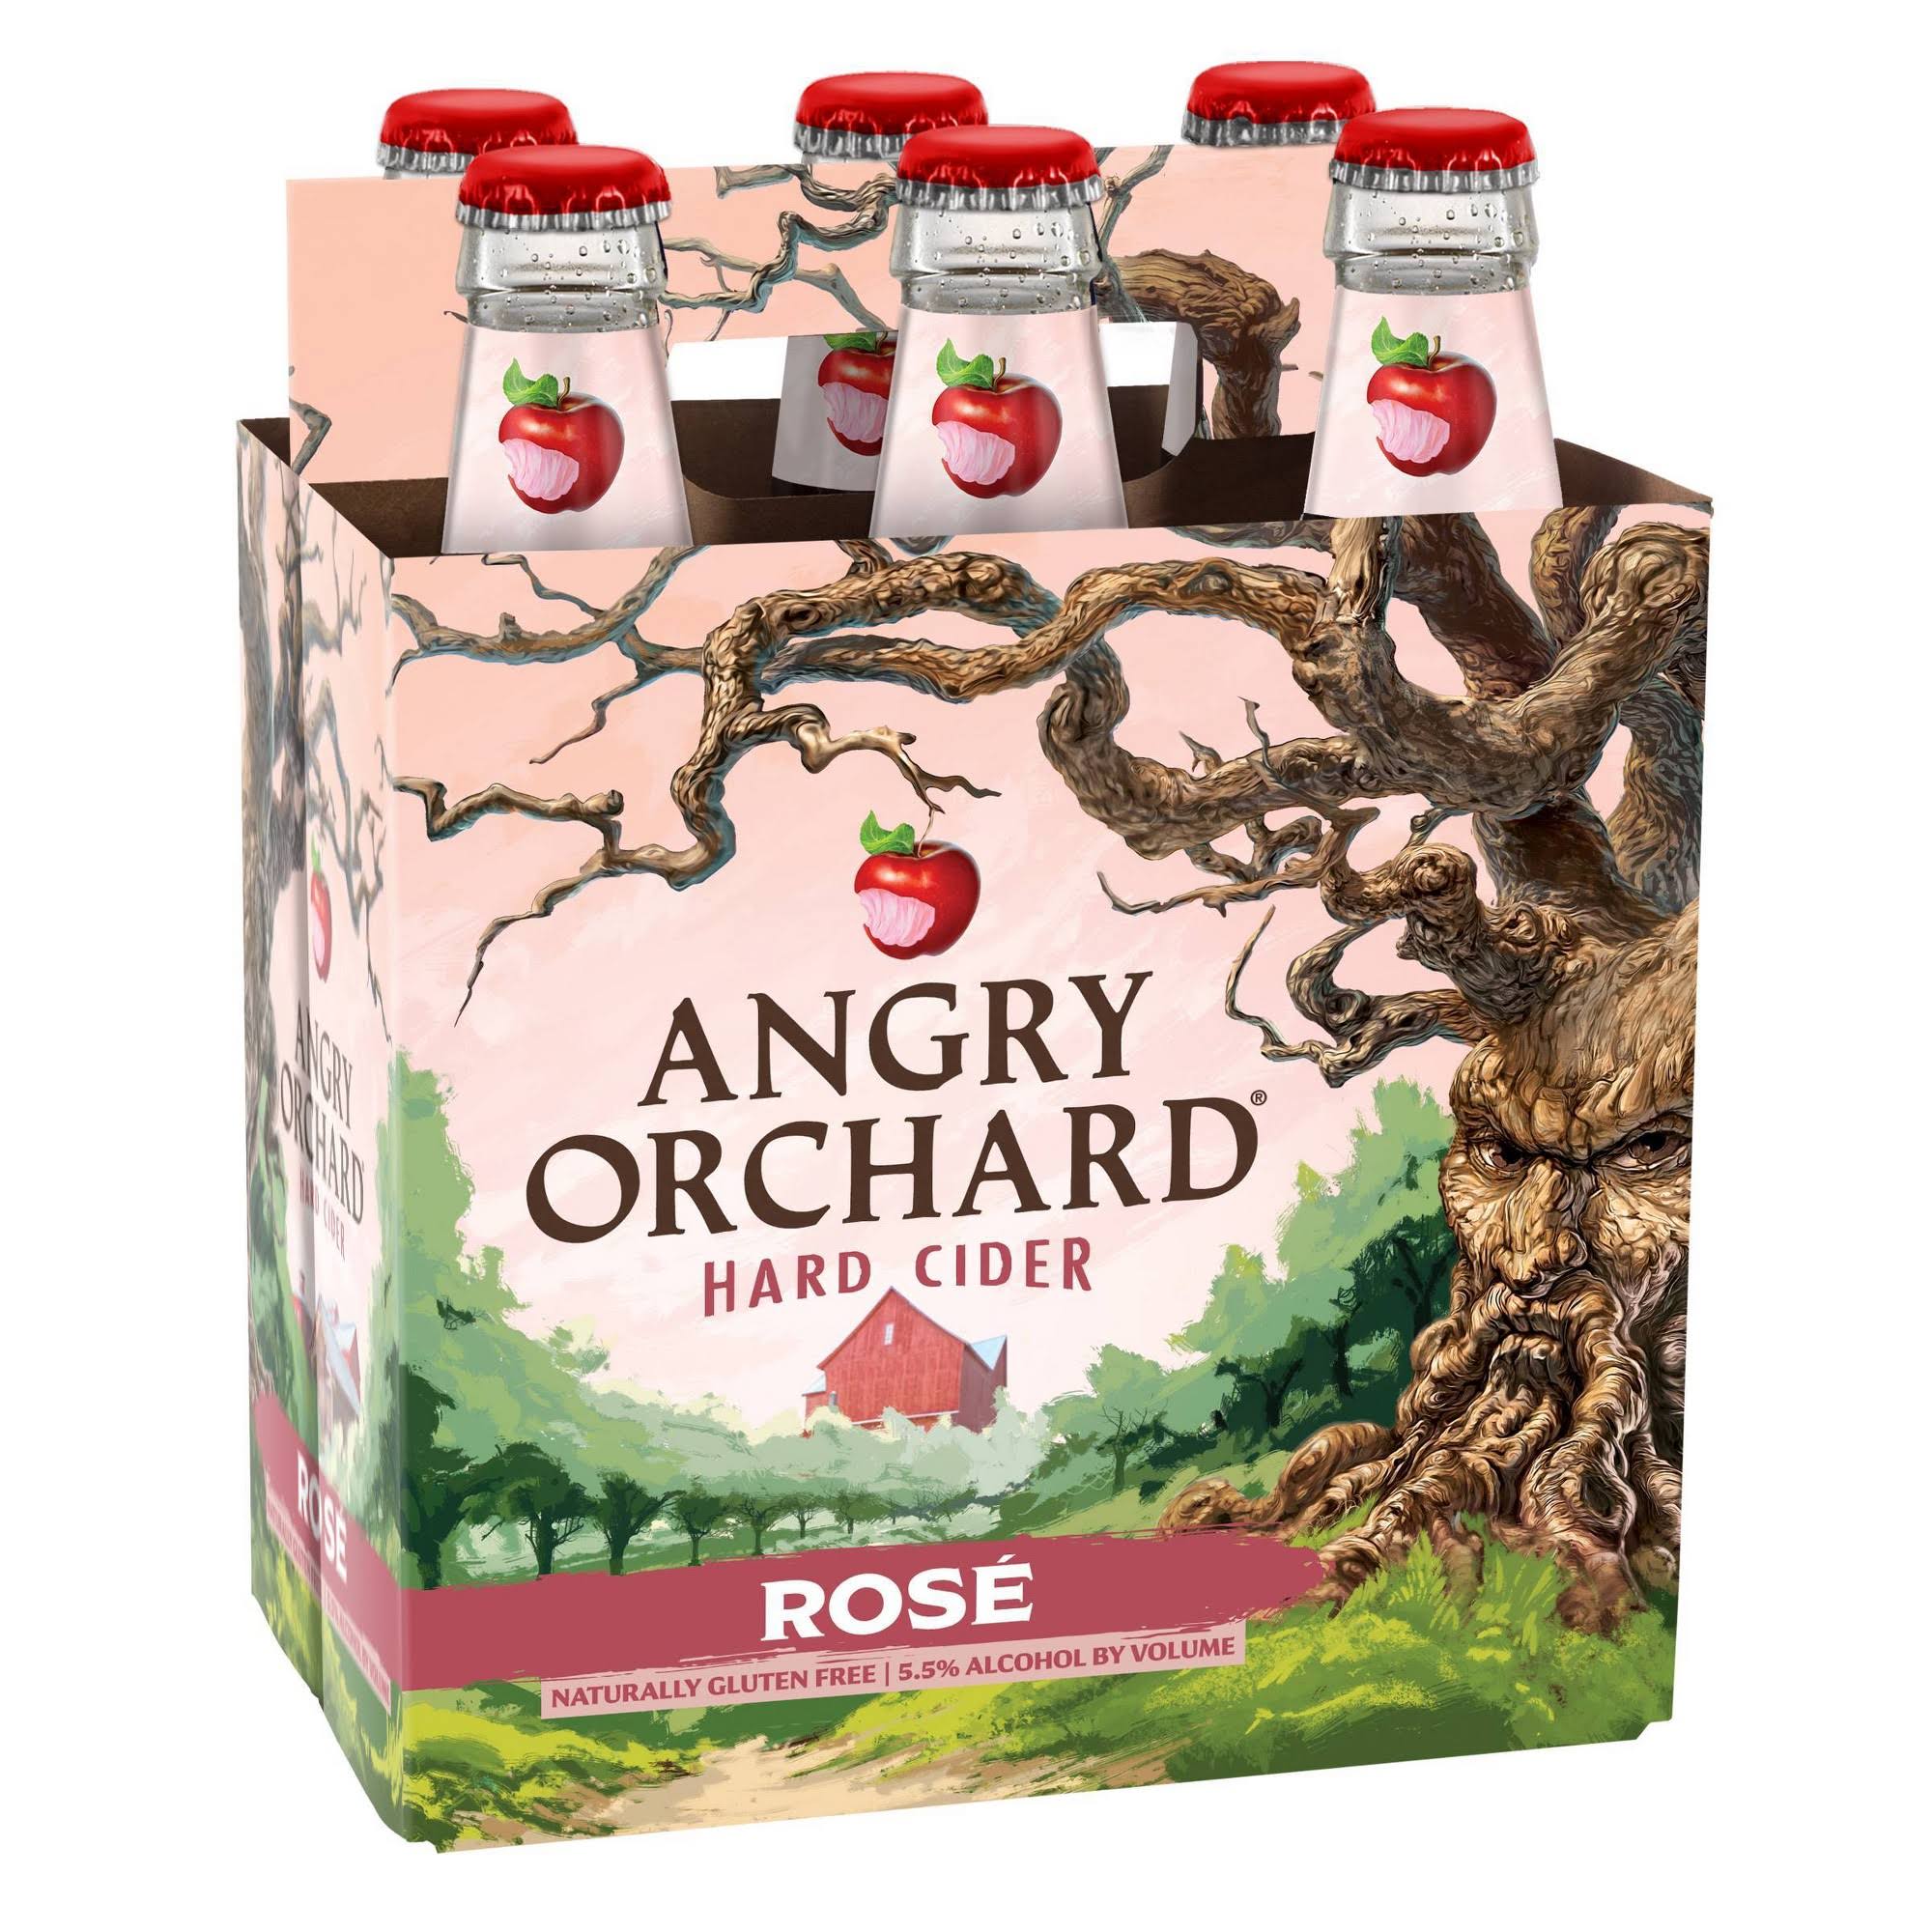 Angry Orchard Beer, Hard Cider, Rose - 6 pack, 12 fl oz bottles